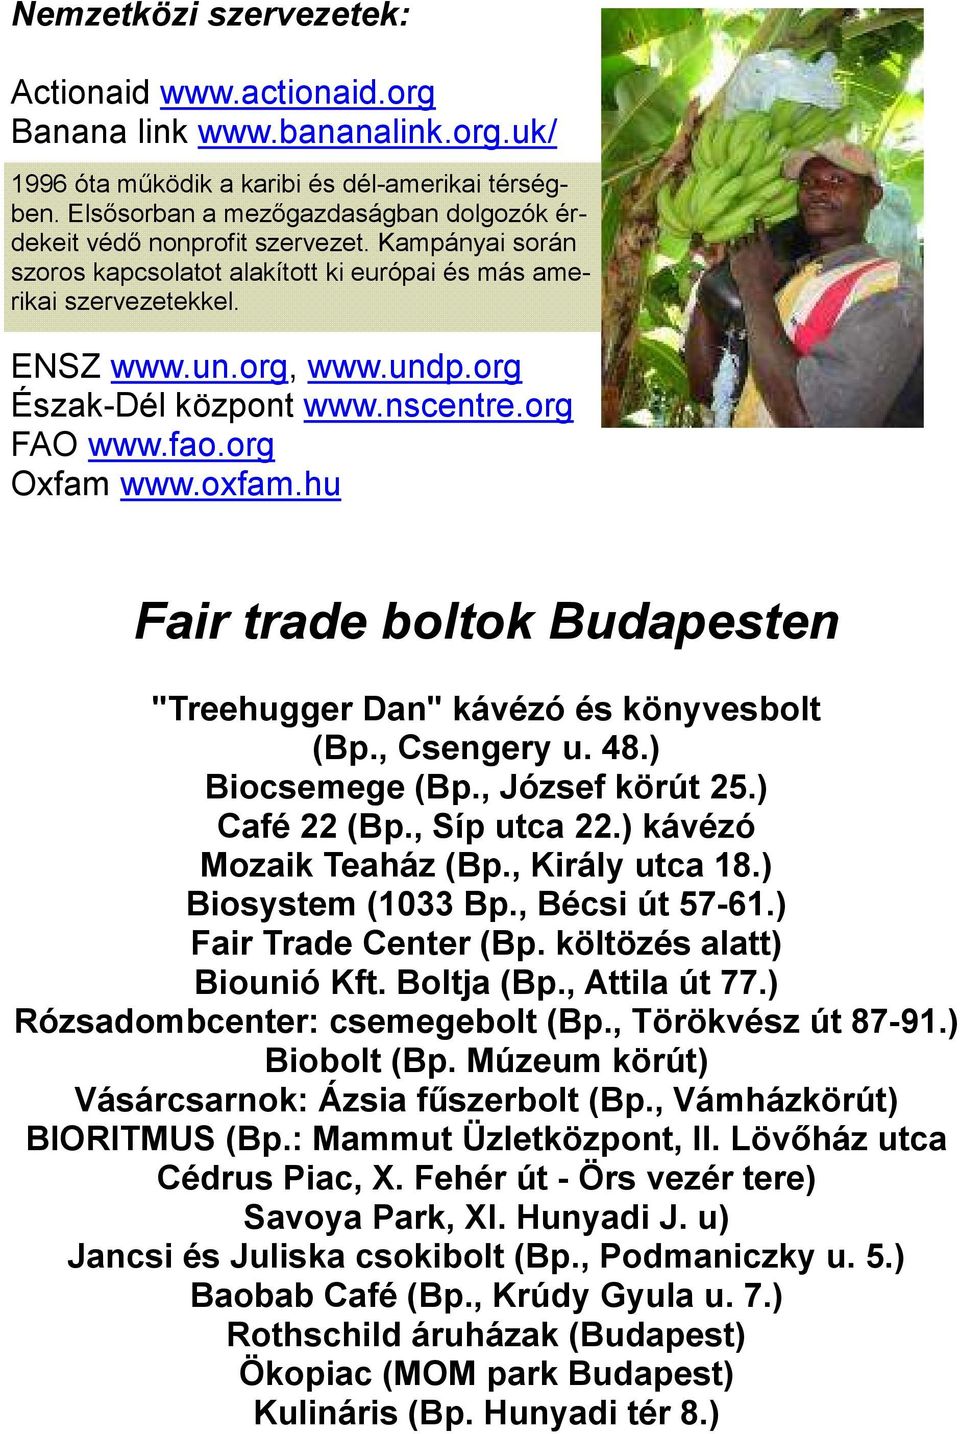 org Észak-Dél központ www.nscentre.org FAO www.fao.org Oxfam www.oxfam.hu Fair trade boltok Budapesten "Treehugger Dan" kávézó és könyvesbolt (Bp., Csengery u. 48.) Biocsemege (Bp., József körút 25.